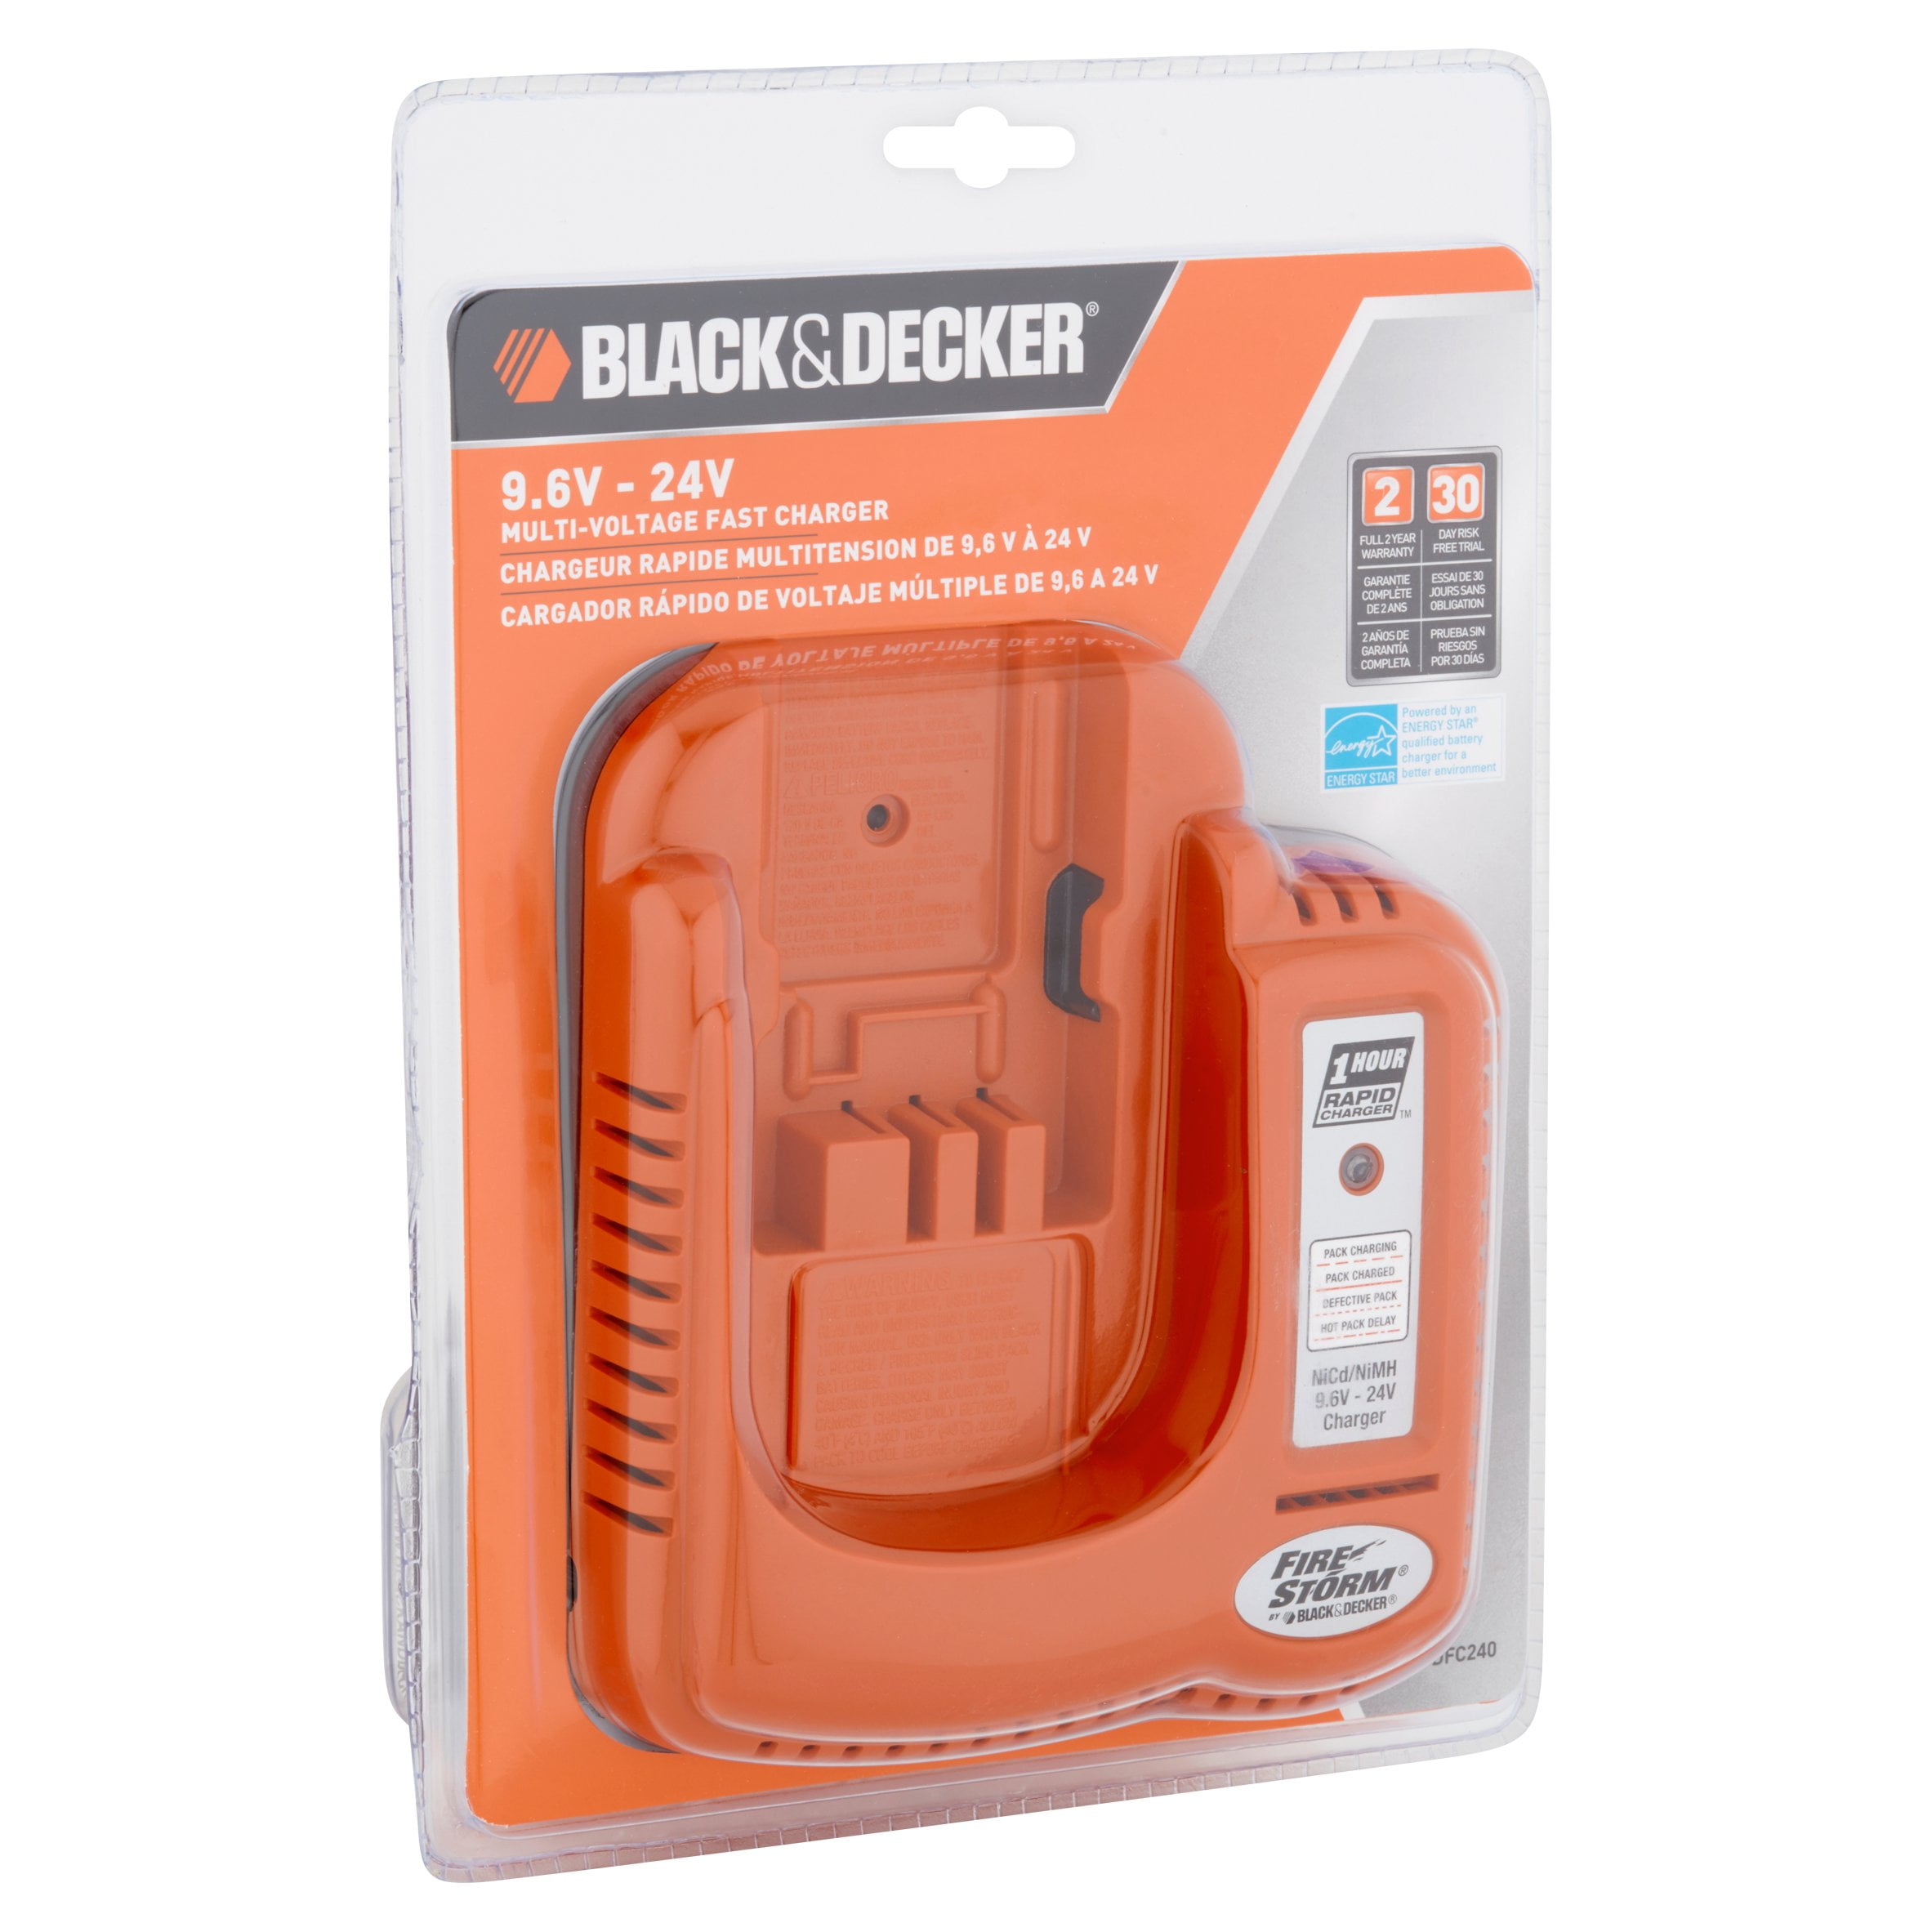 Black Decker Firestorm 9.6v Battery Charger